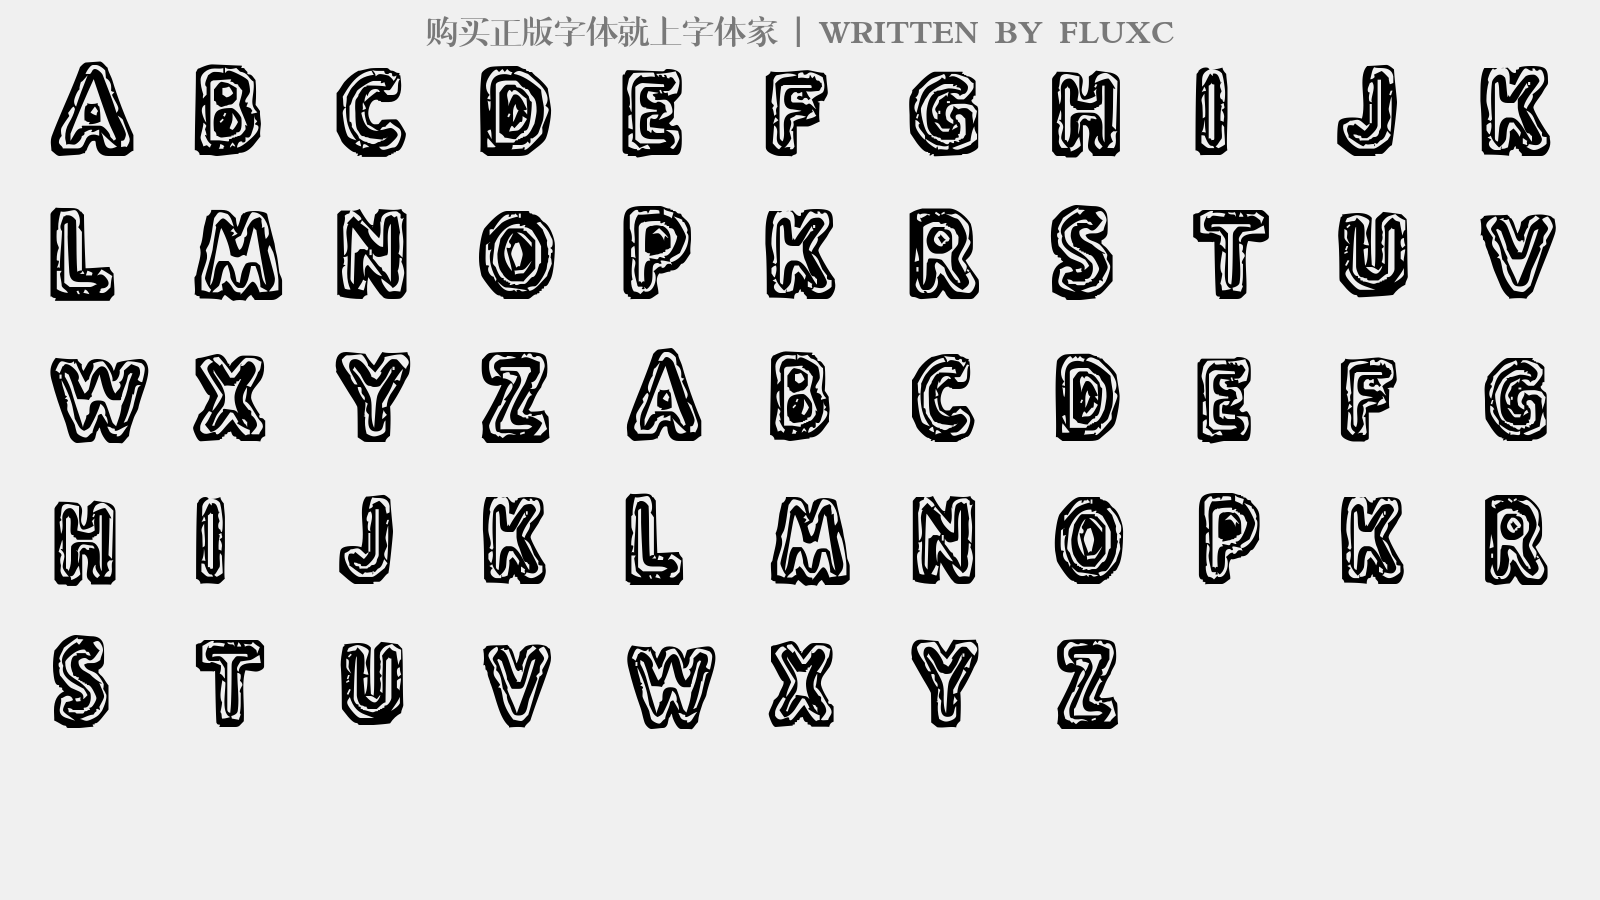 FLUXC - 大写字母/小写字母/数字